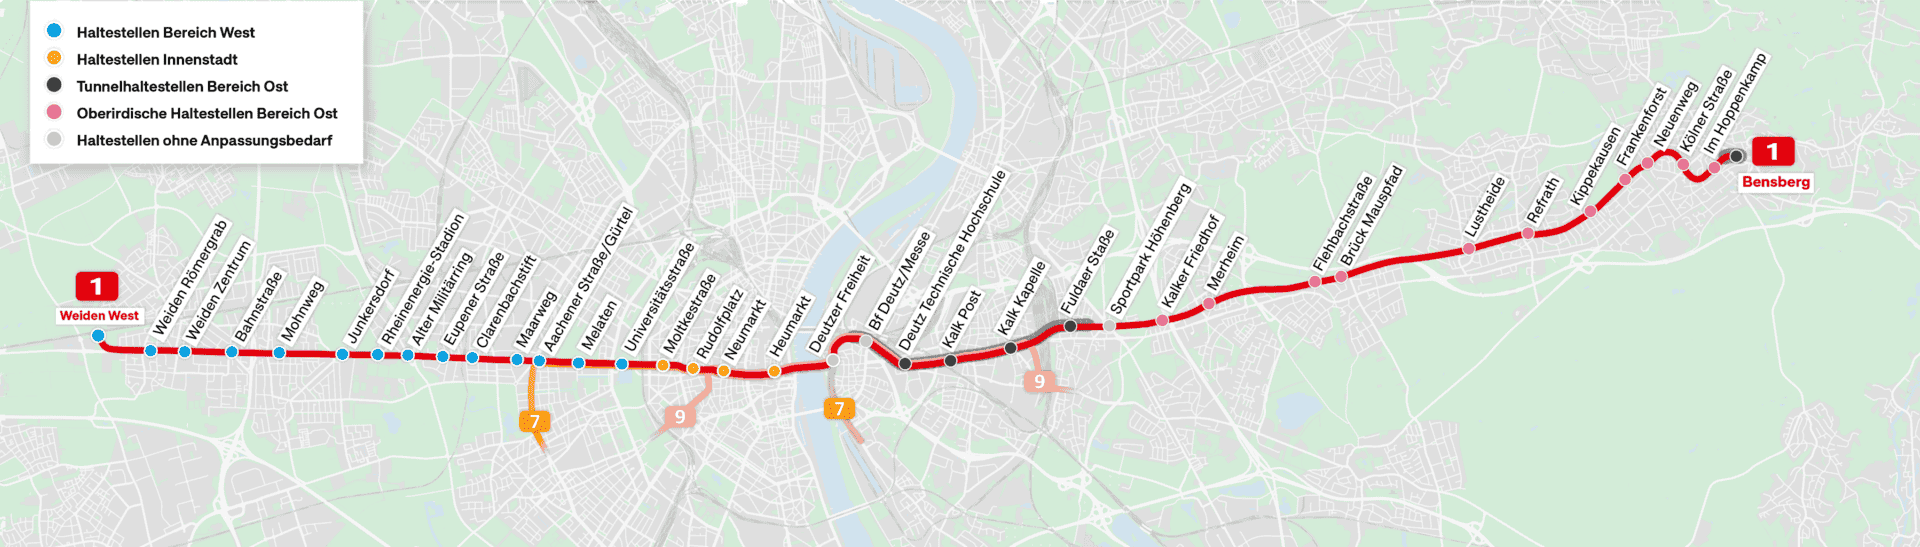 Streckenverlauf Linie 1 Ost-West-Achse Köln